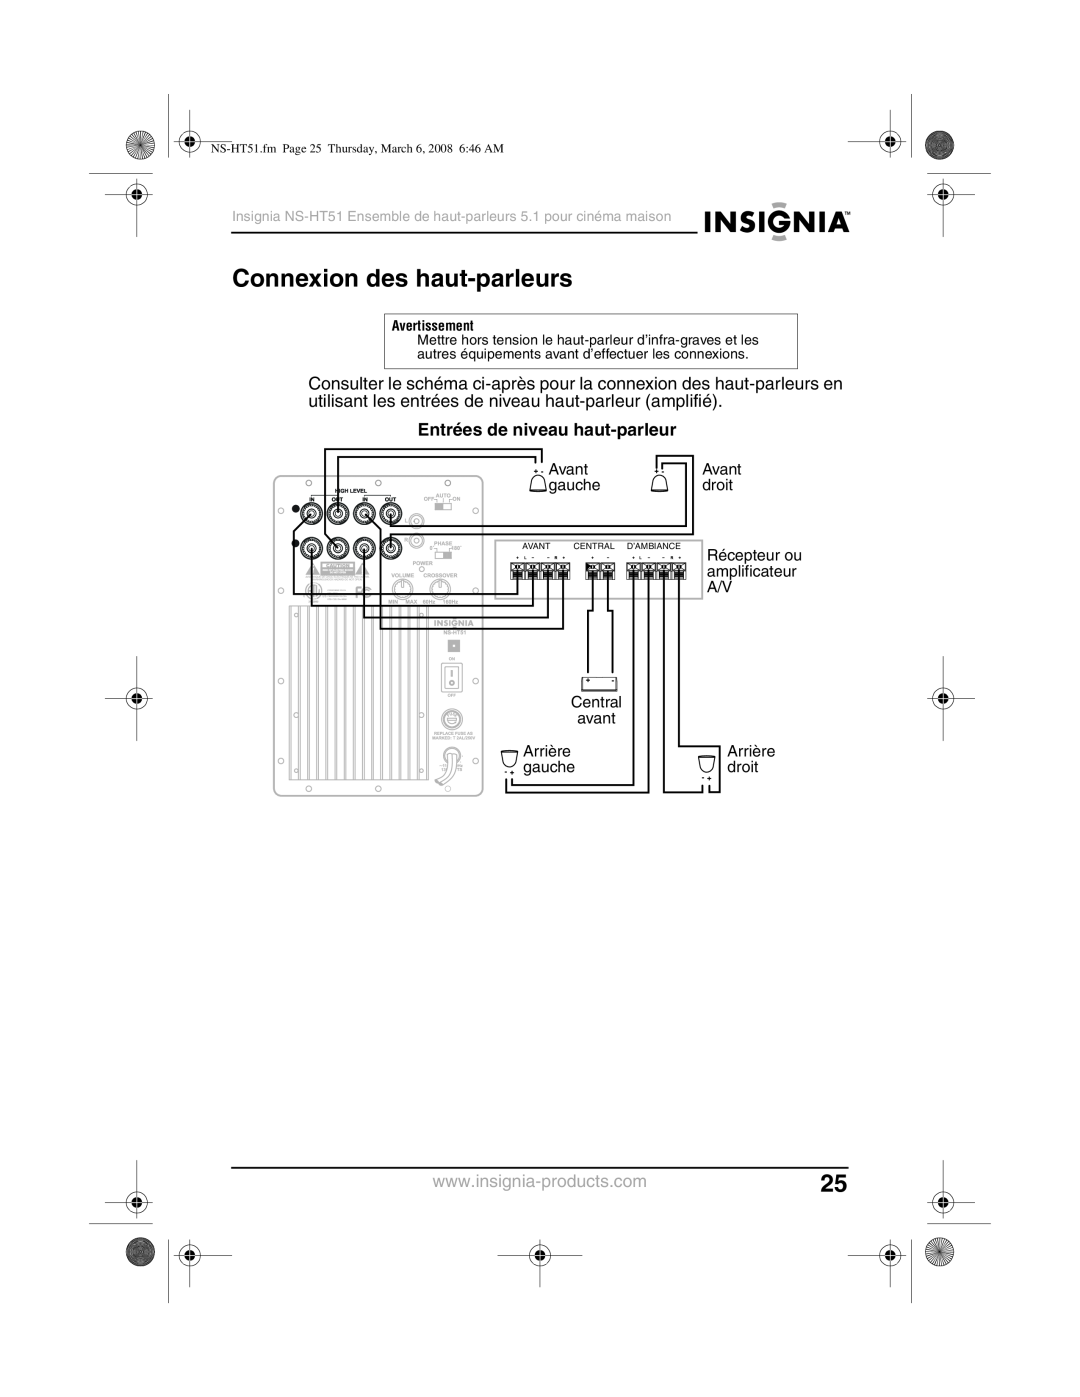 Insignia NS-HT51 manual Connexion des haut-parleurs, Entrées de niveau haut-parleur 